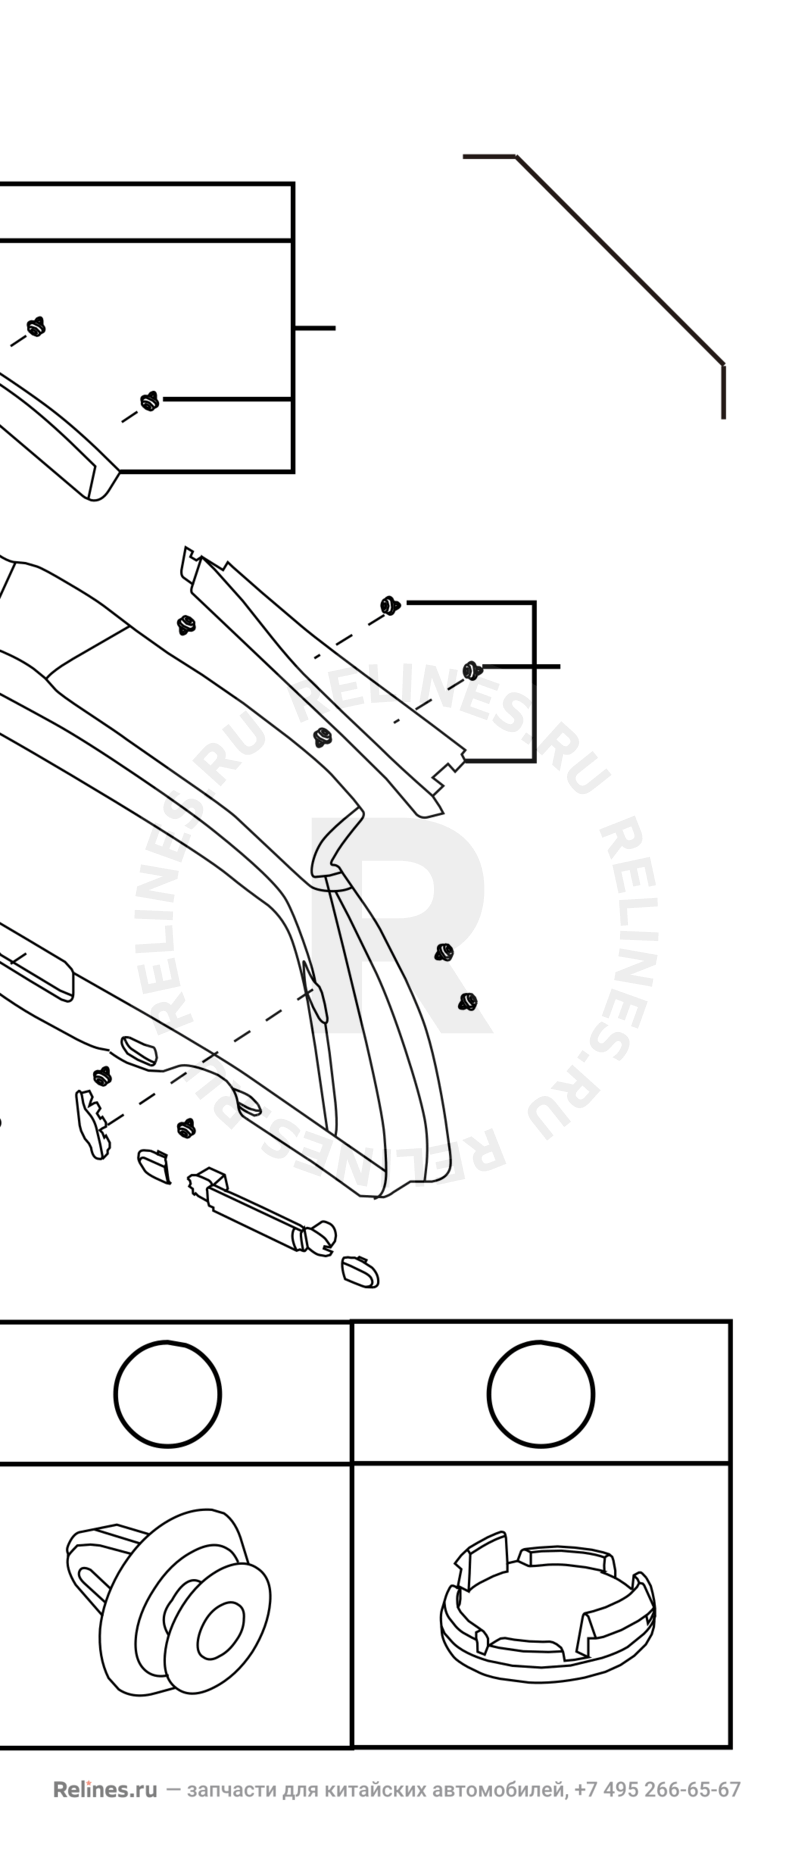 Запчасти Great Wall Hover H6 Поколение I (2011) 2.0л, дизель, 4x2, МКПП — Обшивка и комплектующие 5-й двери (багажника) (1) — схема